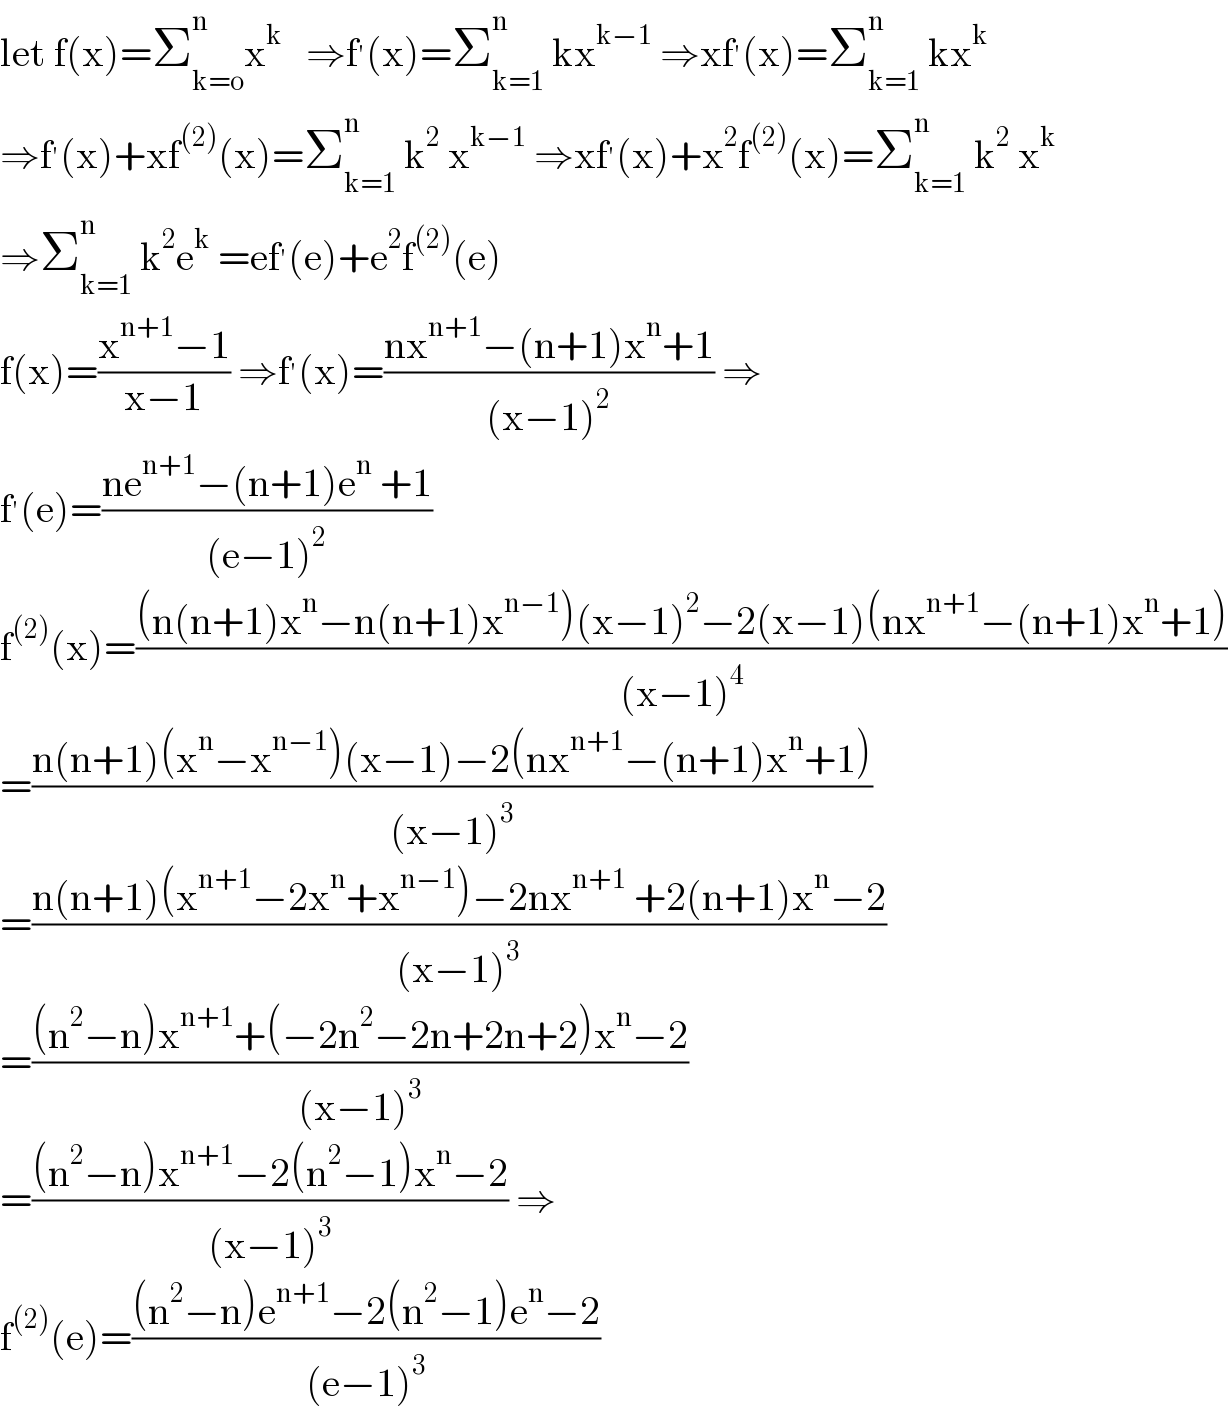 let f(x)=Σ_(k=o) ^n x^k    ⇒f^′ (x)=Σ_(k=1) ^n  kx^(k−1)  ⇒xf^′ (x)=Σ_(k=1) ^n  kx^k   ⇒f^′ (x)+xf^((2)) (x)=Σ_(k=1) ^n  k^2  x^(k−1)  ⇒xf^′ (x)+x^2 f^((2)) (x)=Σ_(k=1) ^n  k^2  x^k   ⇒Σ_(k=1) ^n  k^2 e^k  =ef^′ (e)+e^2 f^((2)) (e)  f(x)=((x^(n+1) −1)/(x−1)) ⇒f^′ (x)=((nx^(n+1) −(n+1)x^n +1)/((x−1)^2 )) ⇒  f^′ (e)=((ne^(n+1) −(n+1)e^n  +1)/((e−1)^2 ))  f^((2)) (x)=(((n(n+1)x^n −n(n+1)x^(n−1) )(x−1)^2 −2(x−1)(nx^(n+1) −(n+1)x^n +1))/((x−1)^4 ))  =((n(n+1)(x^n −x^(n−1) )(x−1)−2(nx^(n+1) −(n+1)x^n +1))/((x−1)^3 ))  =((n(n+1)(x^(n+1) −2x^n +x^(n−1) )−2nx^(n+1)  +2(n+1)x^n −2)/((x−1)^3 ))  =(((n^2 −n)x^(n+1) +(−2n^2 −2n+2n+2)x^n −2)/((x−1)^3 ))  =(((n^2 −n)x^(n+1) −2(n^2 −1)x^n −2)/((x−1)^3 )) ⇒  f^((2)) (e)=(((n^2 −n)e^(n+1) −2(n^2 −1)e^n −2)/((e−1)^3 ))  